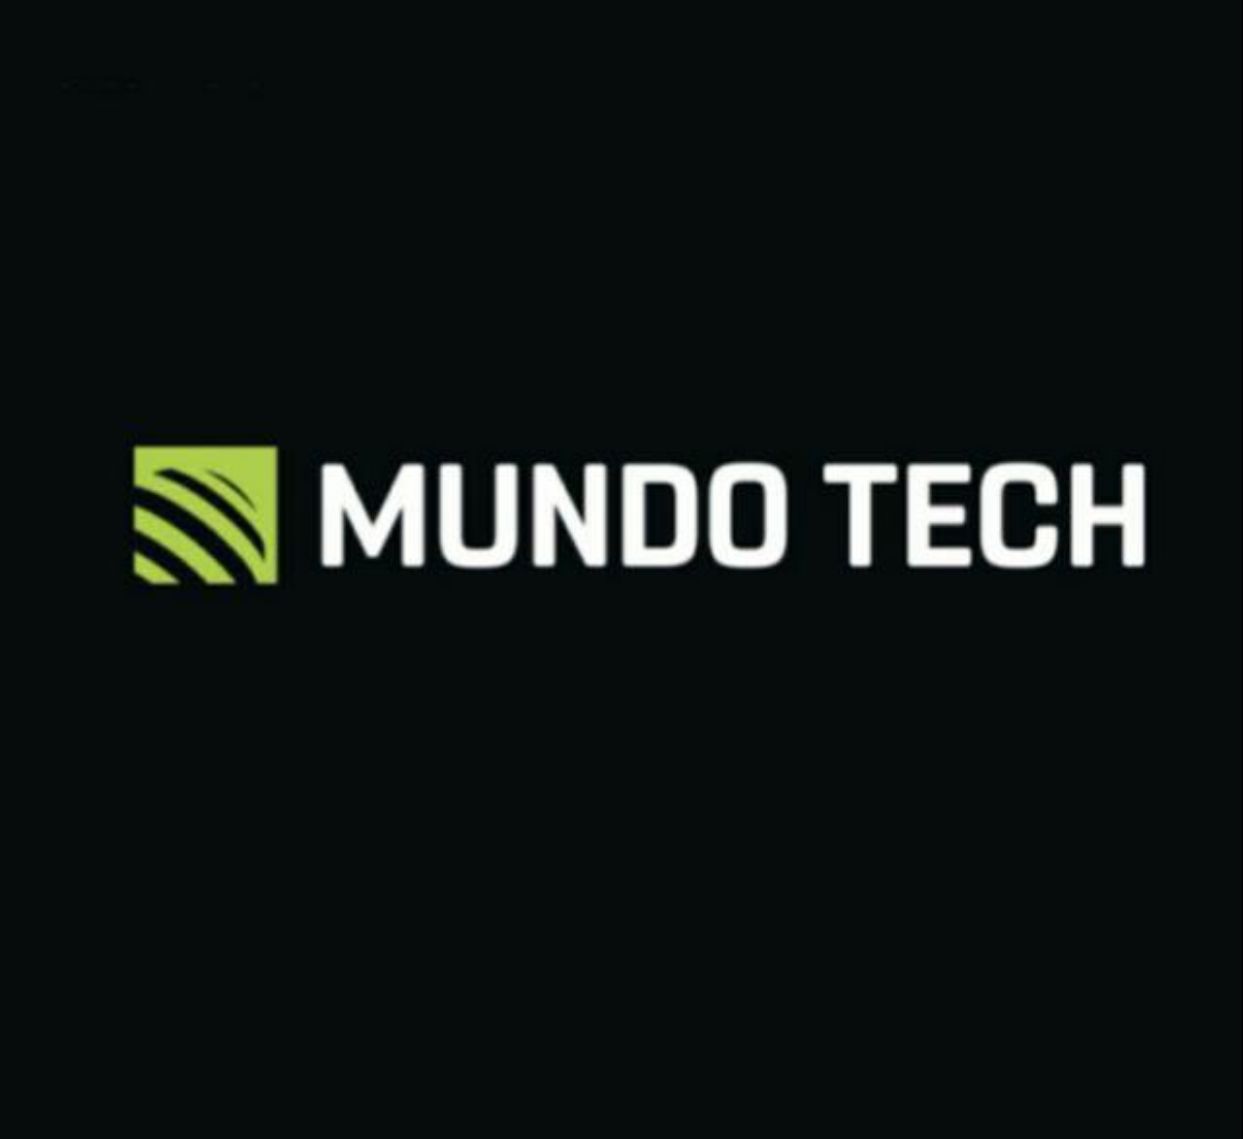 MUNDO TECH logo